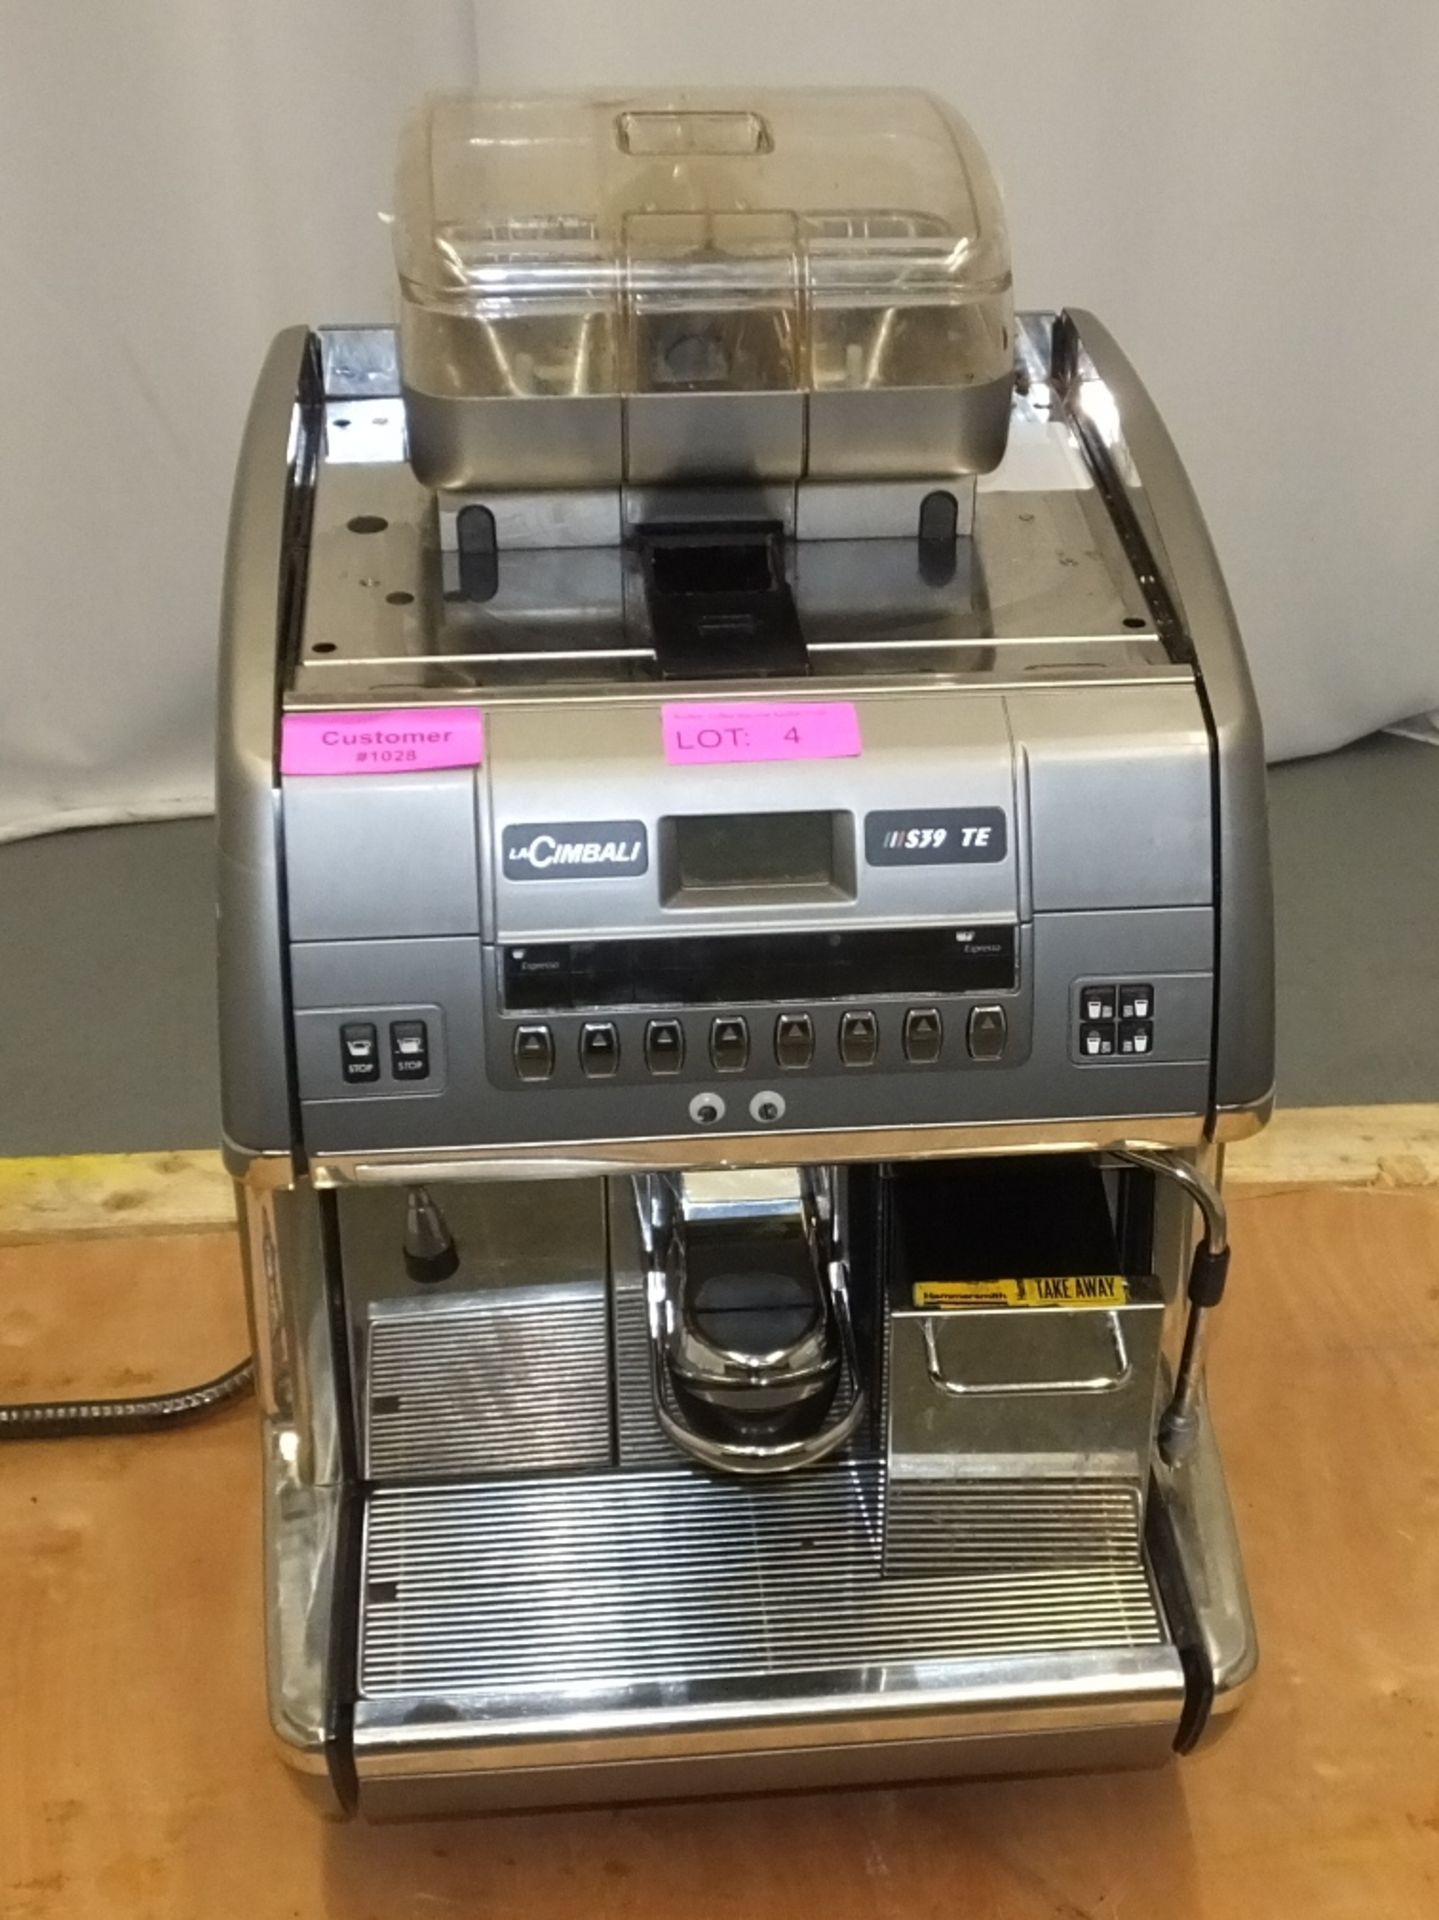 La Cimbali S39 TE Barsystem Coffee Machine